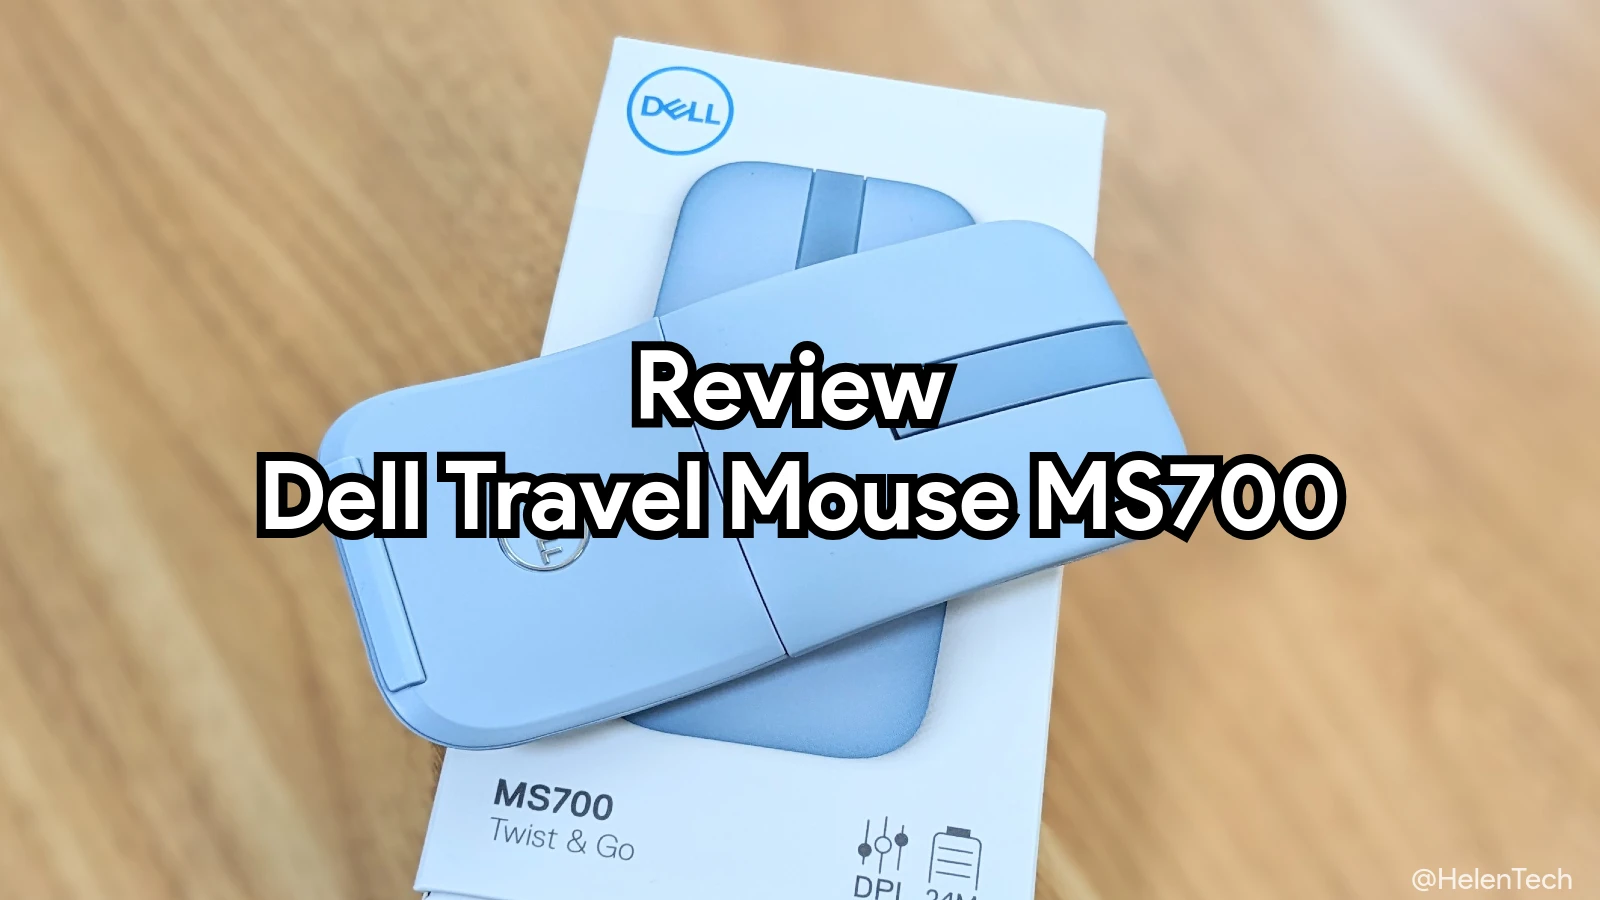 DELL トラベルマウス MS700 をレビュー